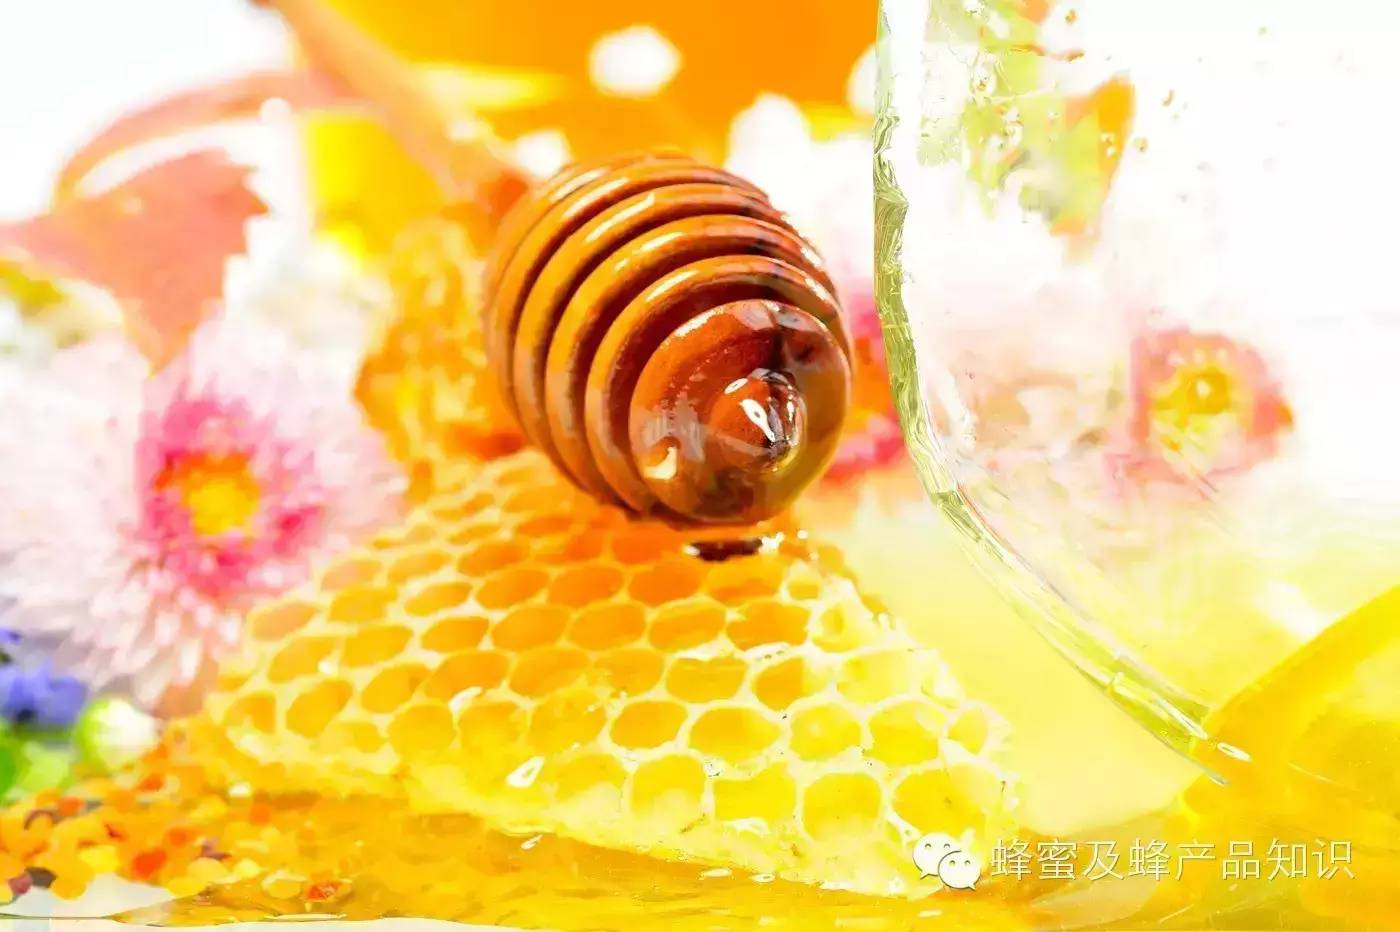 槐花蜂蜜好吗 哪里有蜂蜜卖 如何制作蜂蜜面膜 百花牌蜂蜜 蜂蜜价格